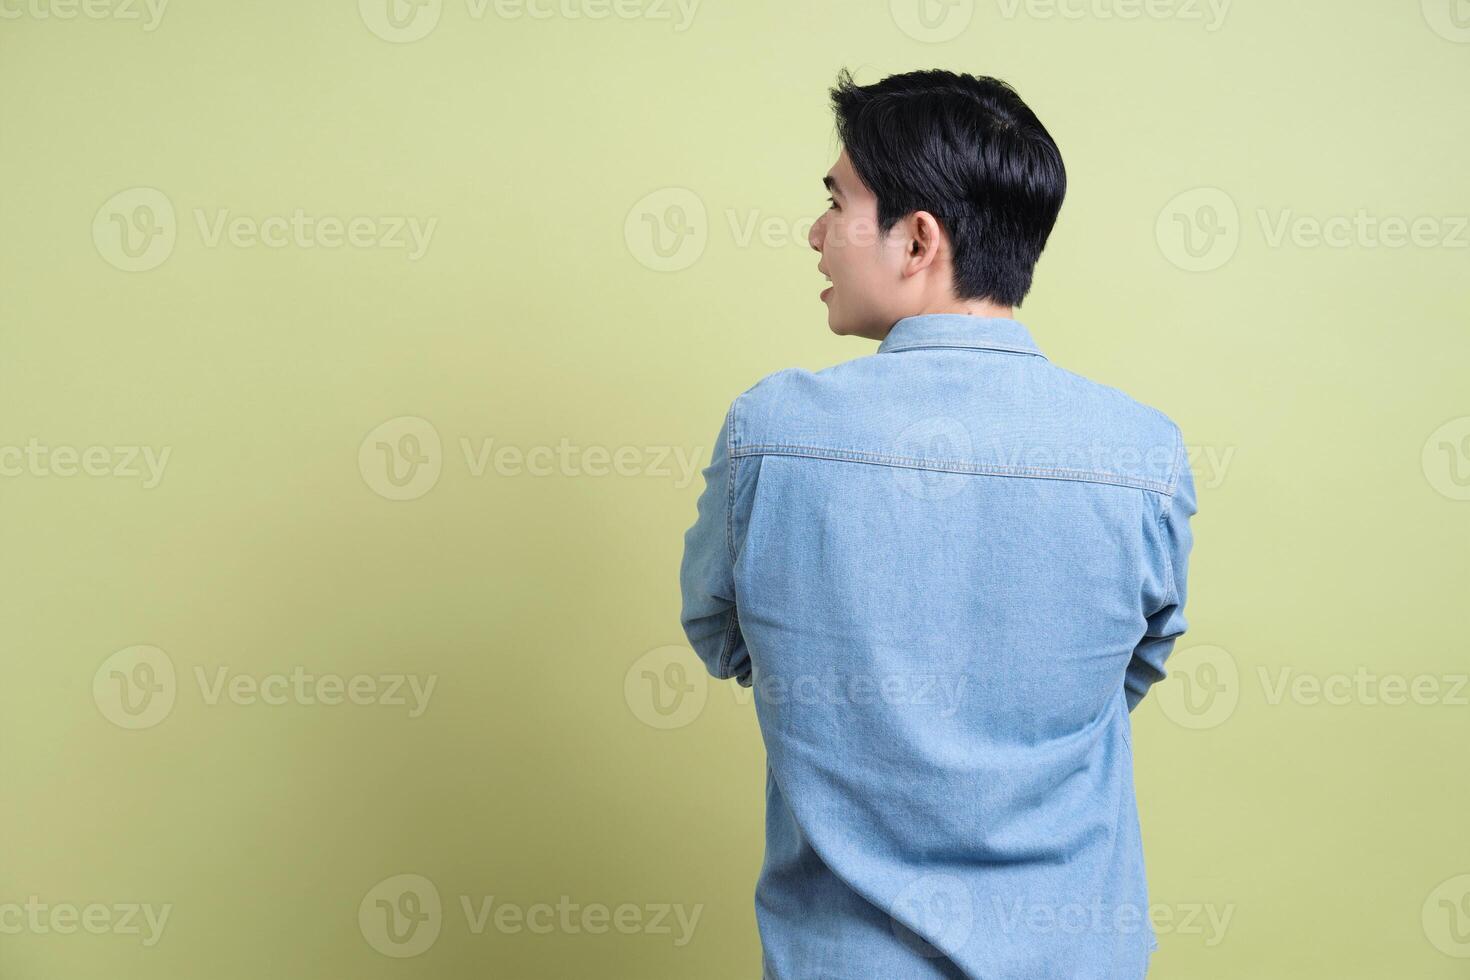 Foto von jung asiatisch Mann auf Grün Hintergrund